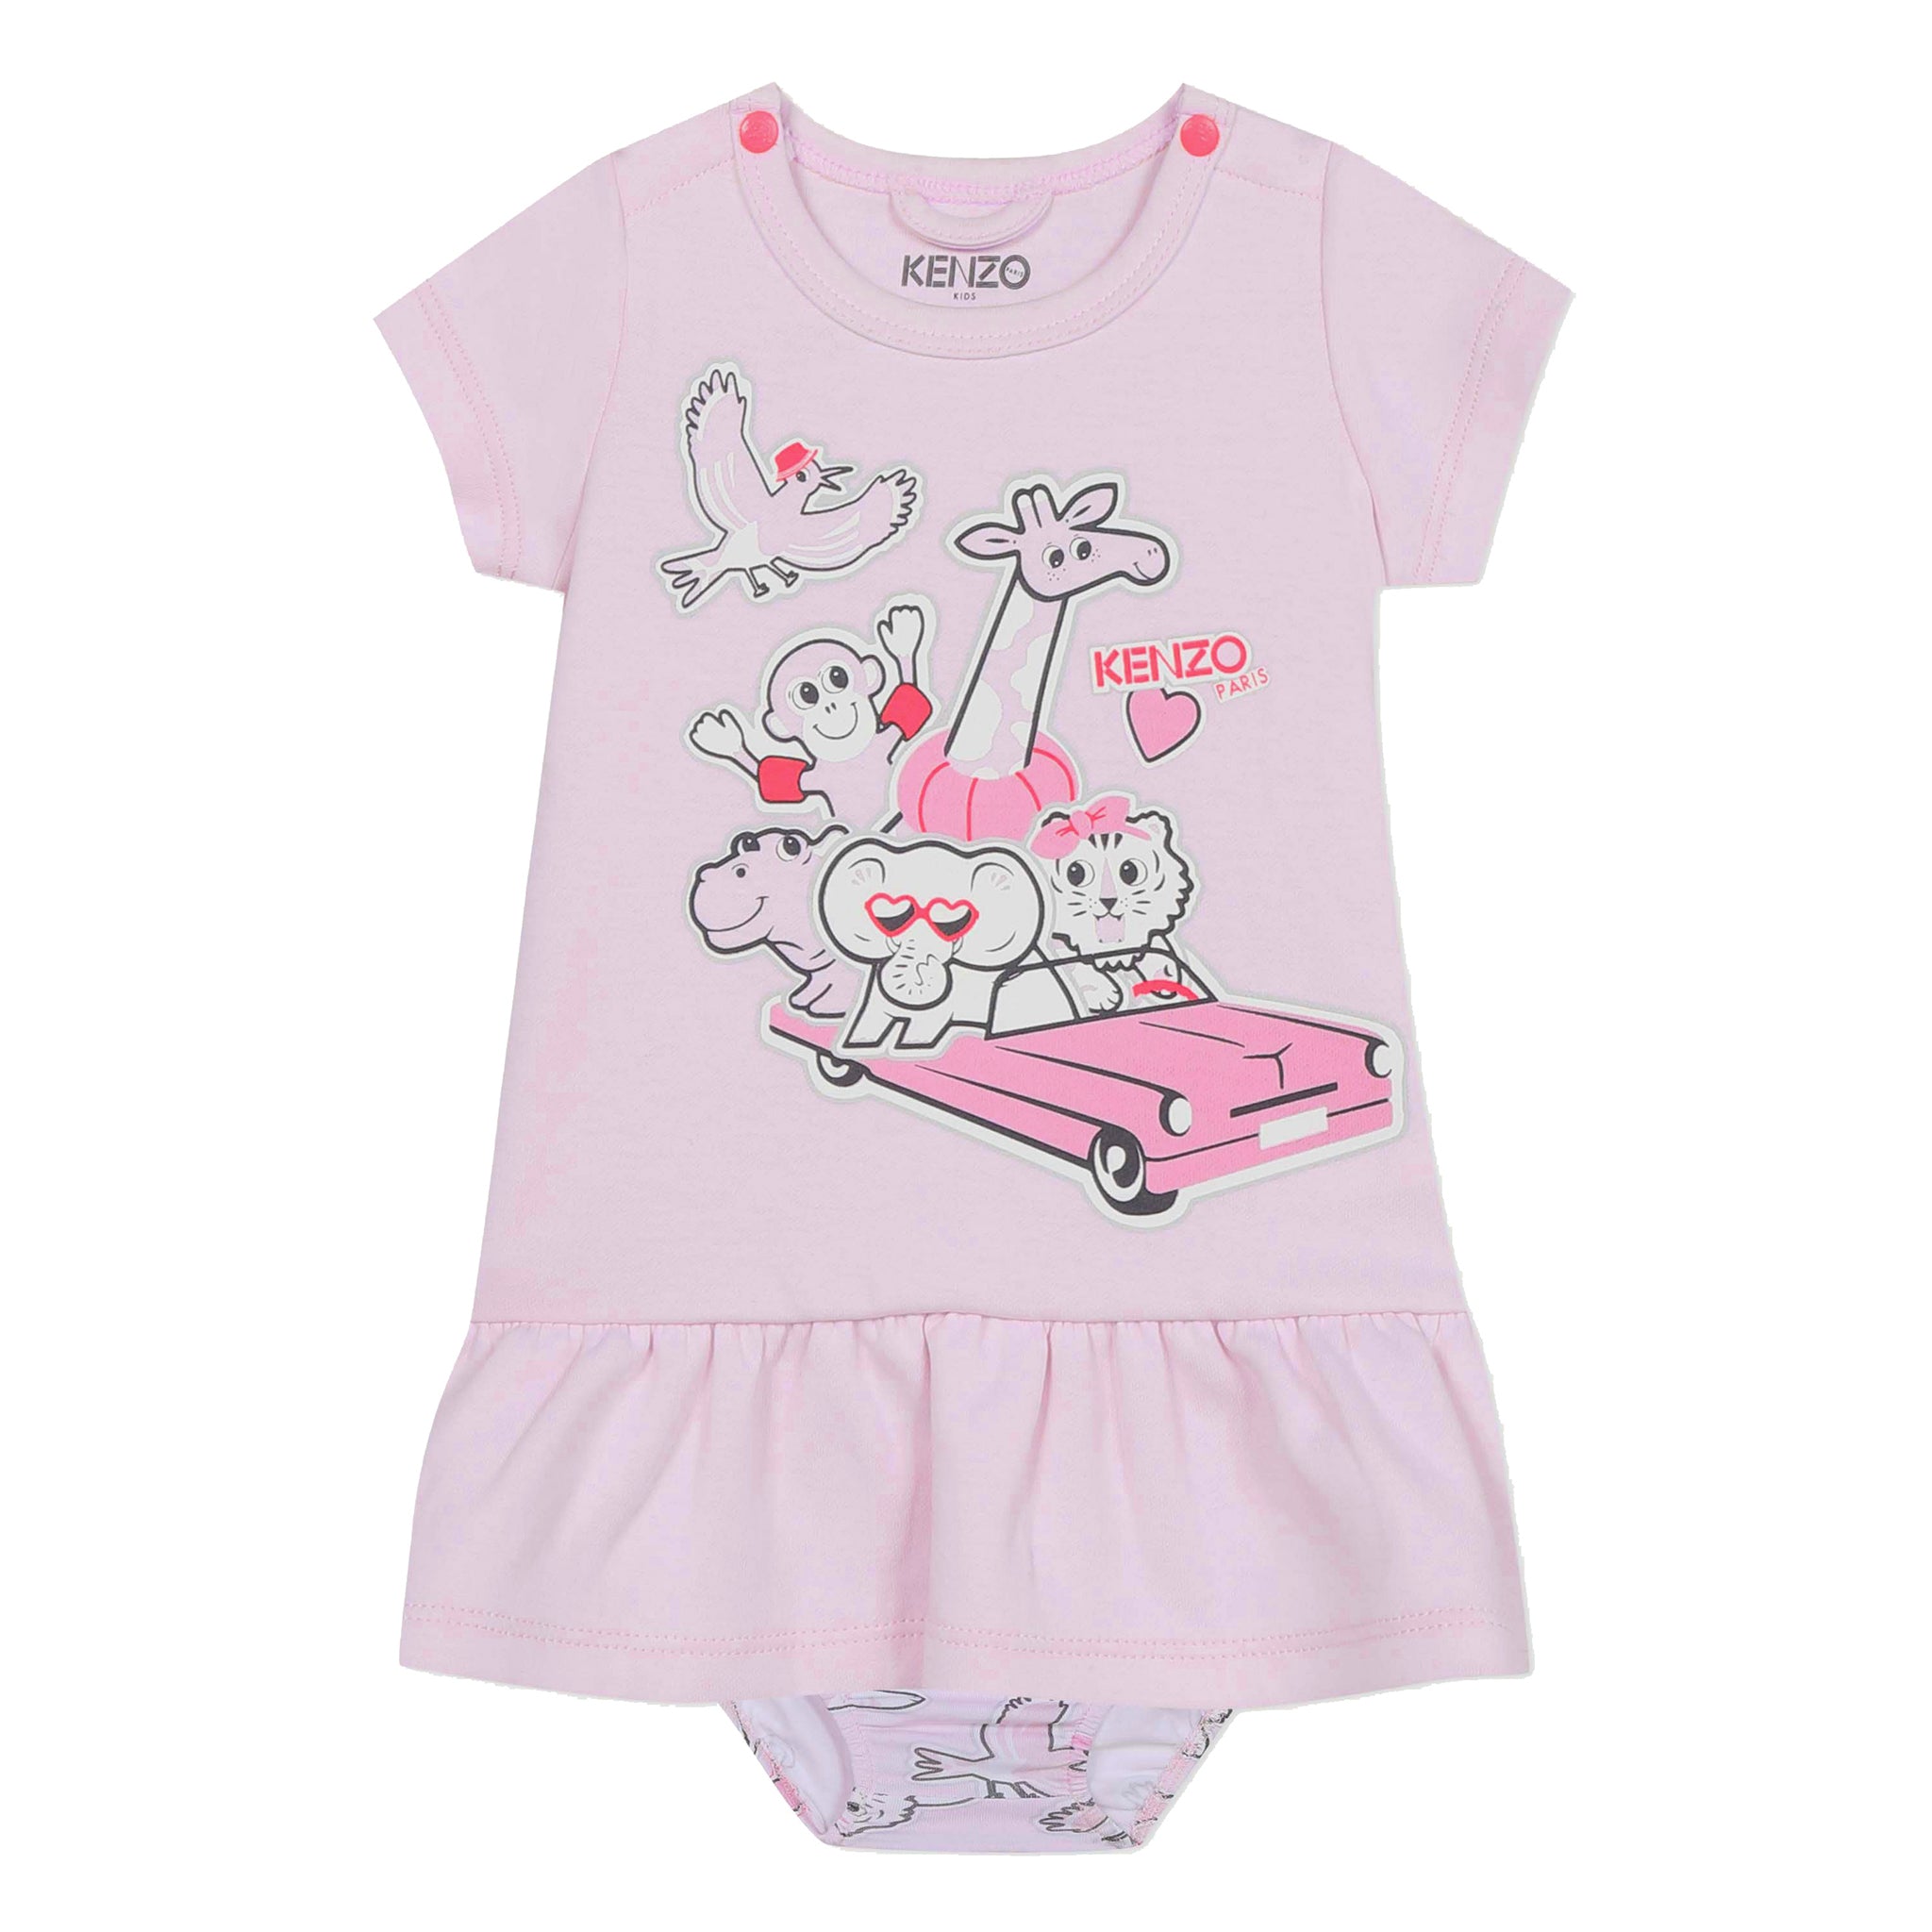 kenzo infant clothing